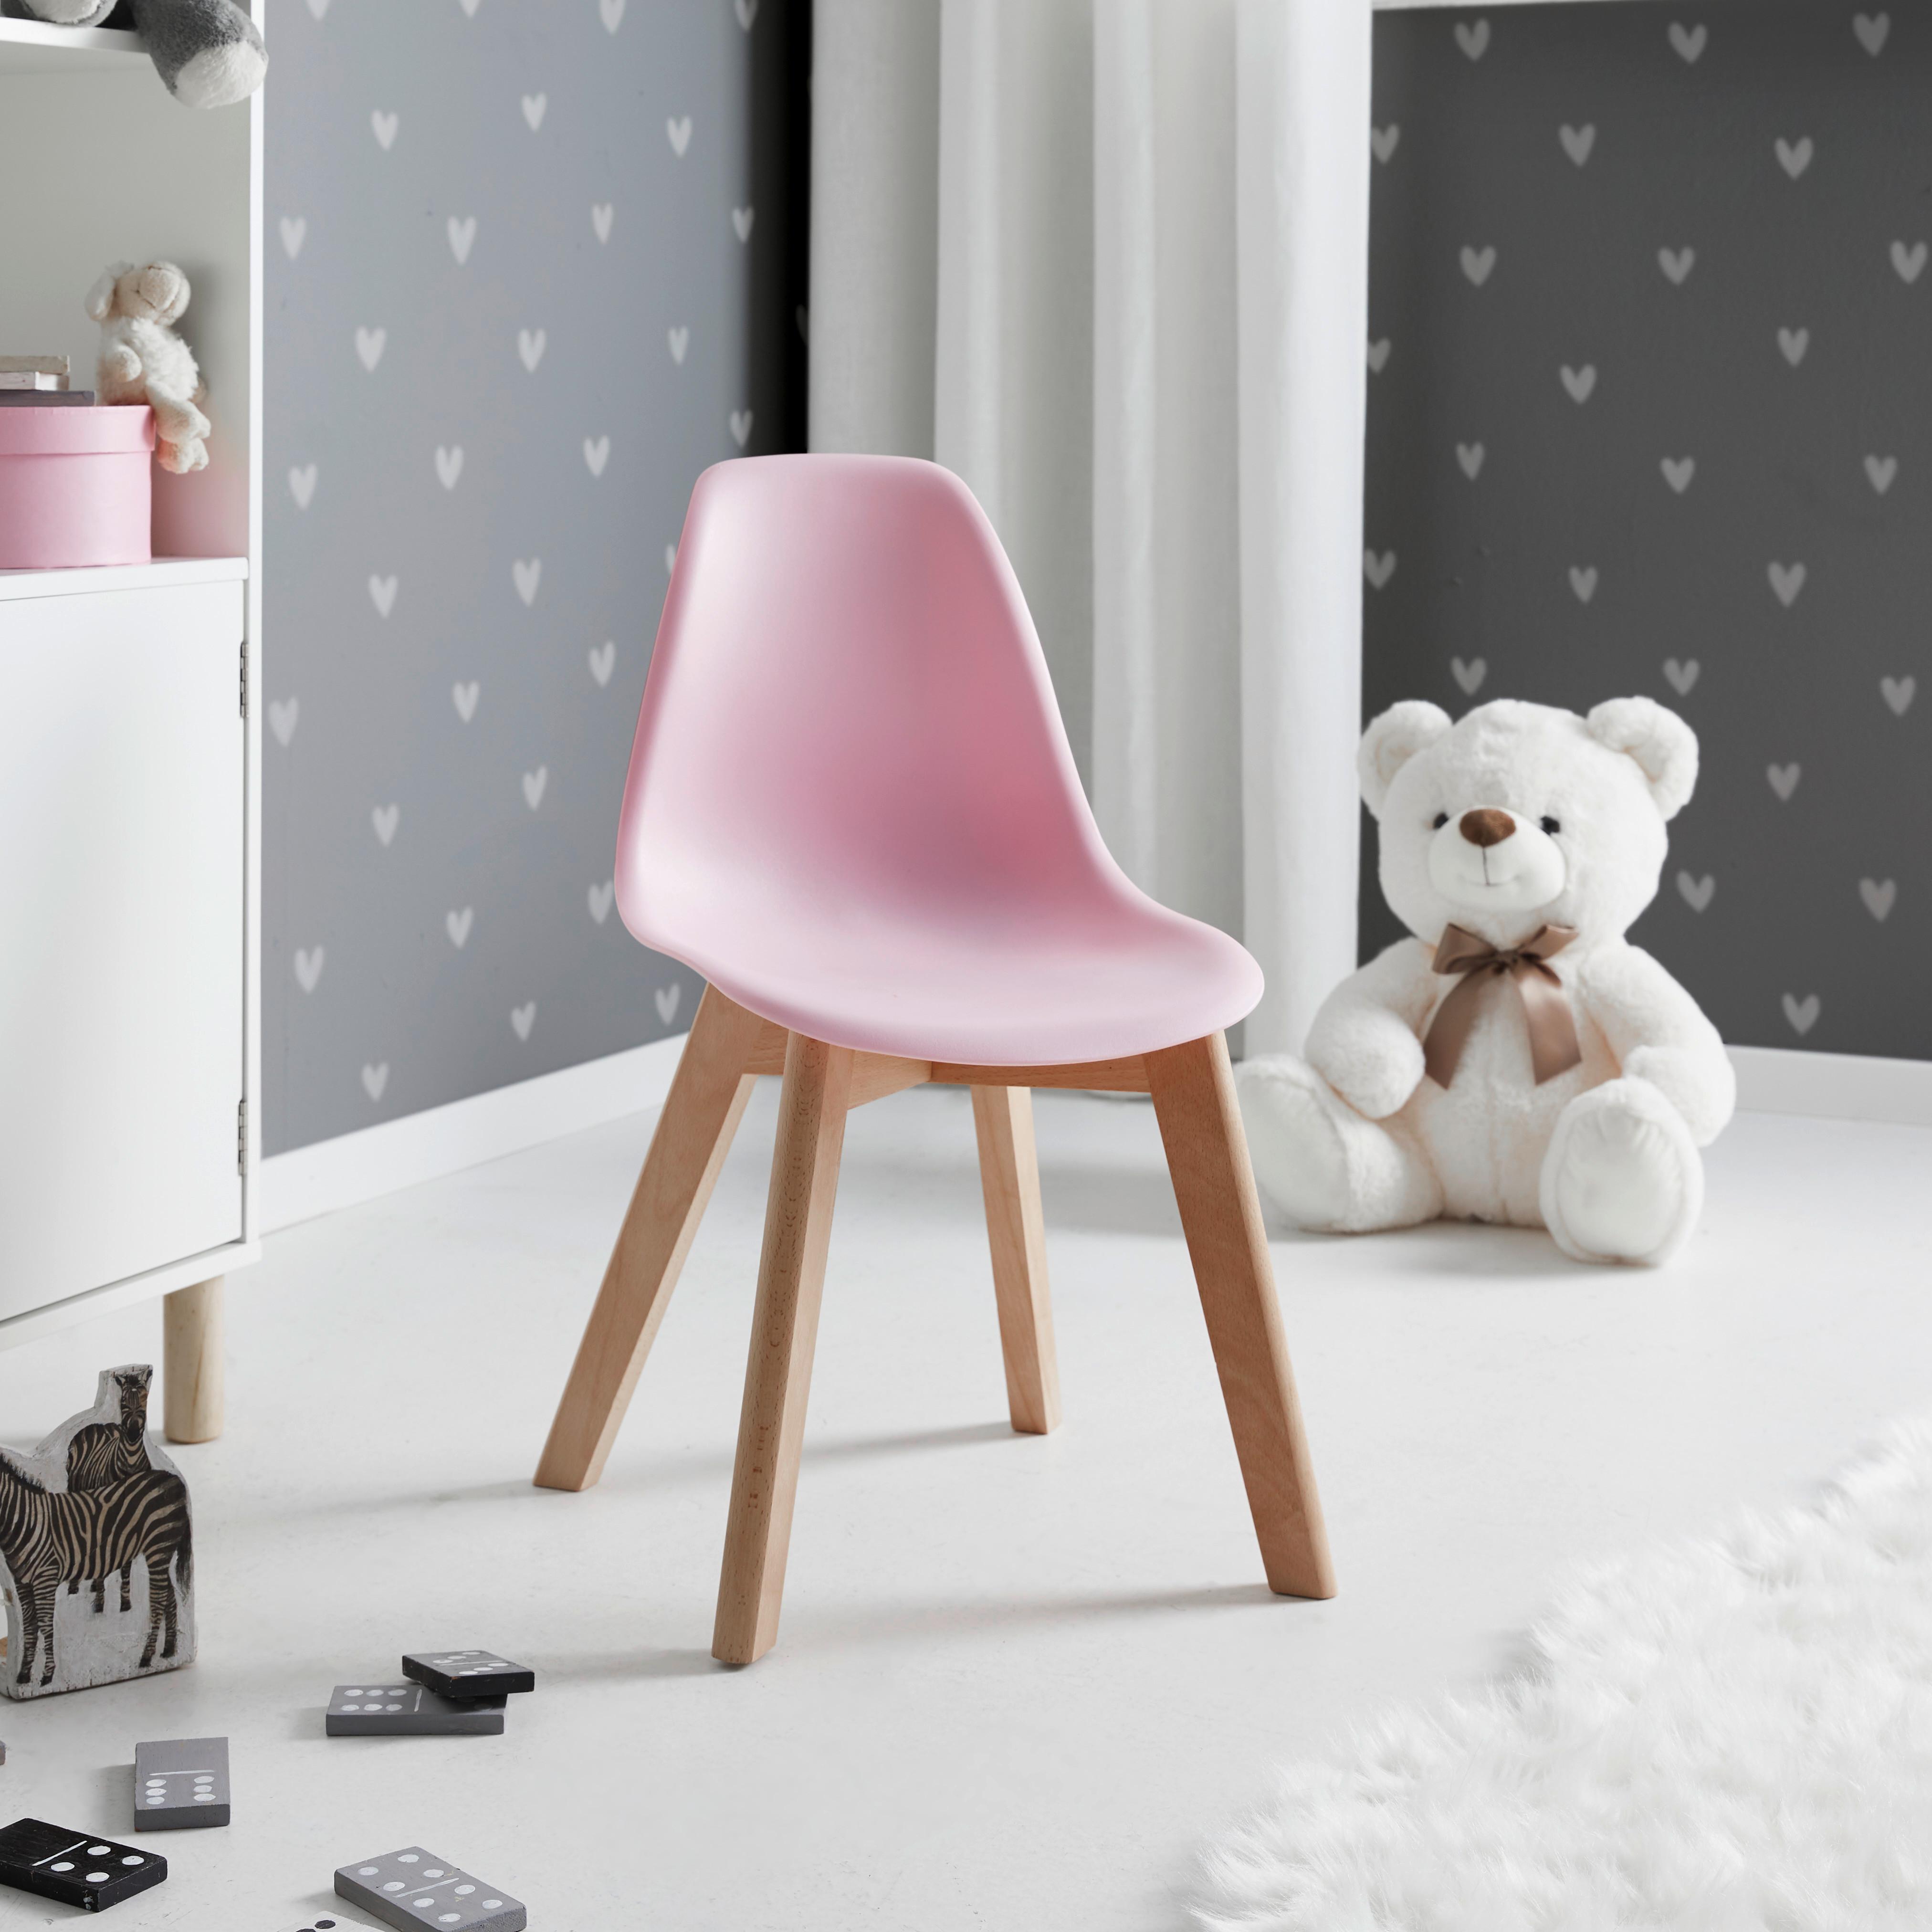 Dětská Židle Tibby - růžová, Moderní, dřevo/plast (30/58/34cm) - P & B